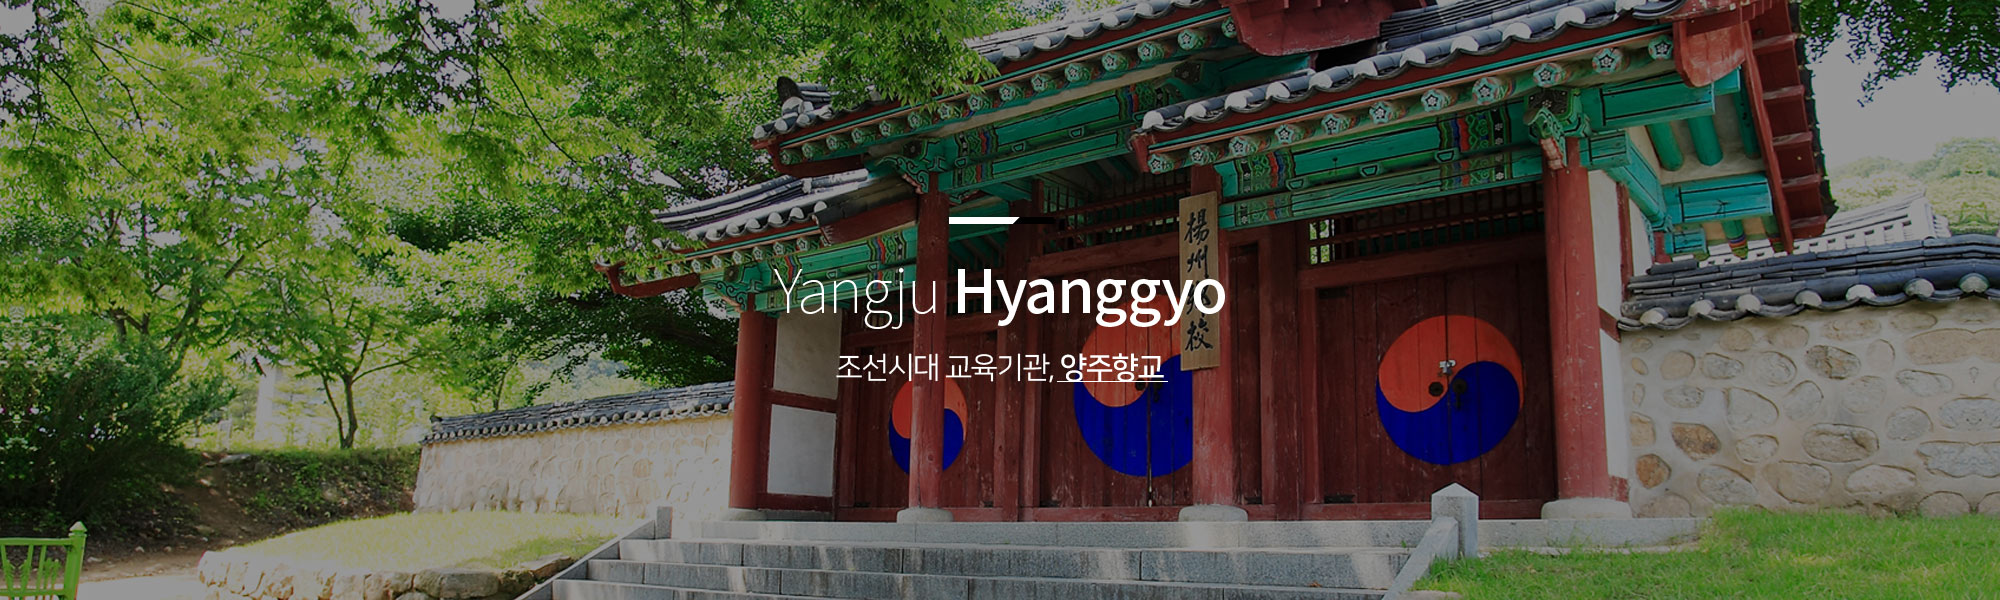 Yangju Hyanggyo 조선시대 교육기관, 양주향교